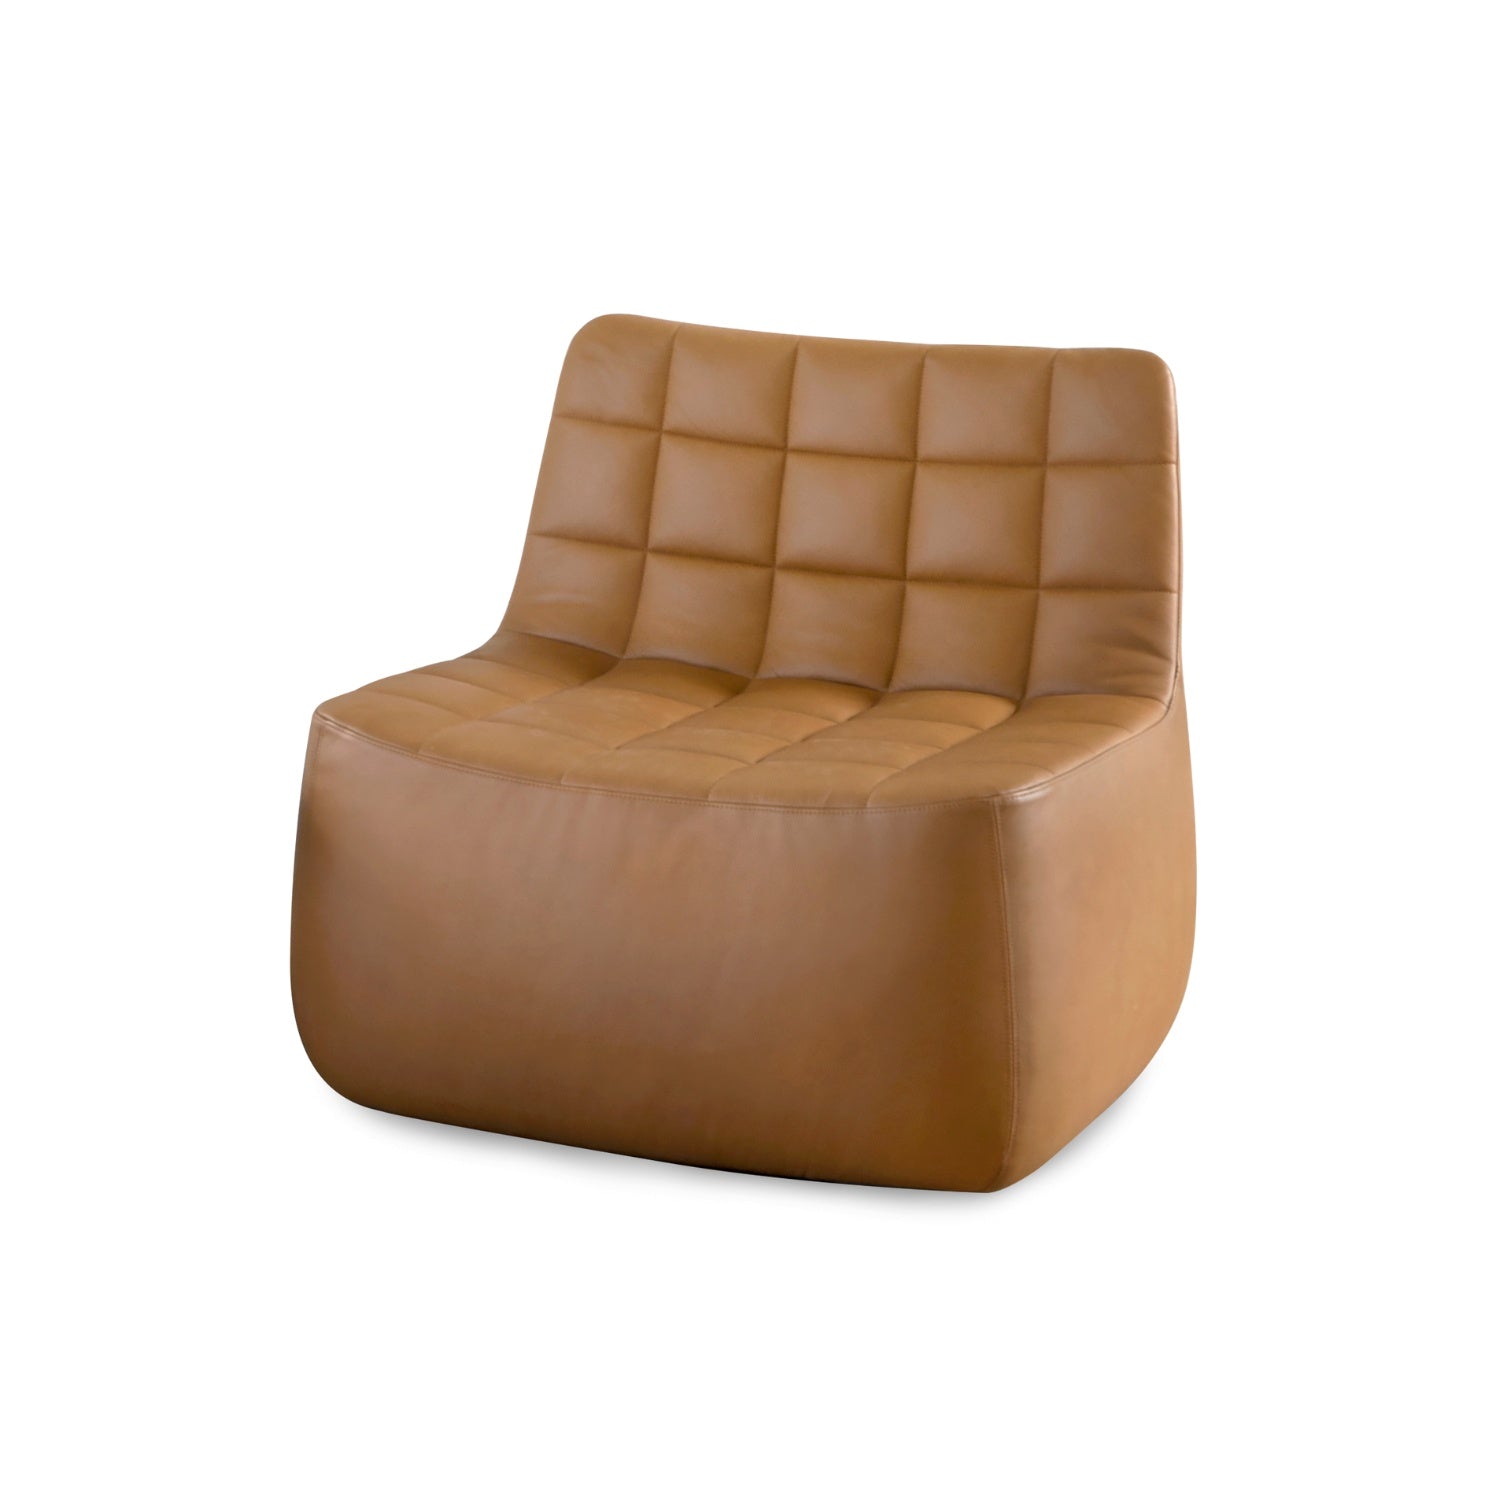 YAM - Lounge Chair